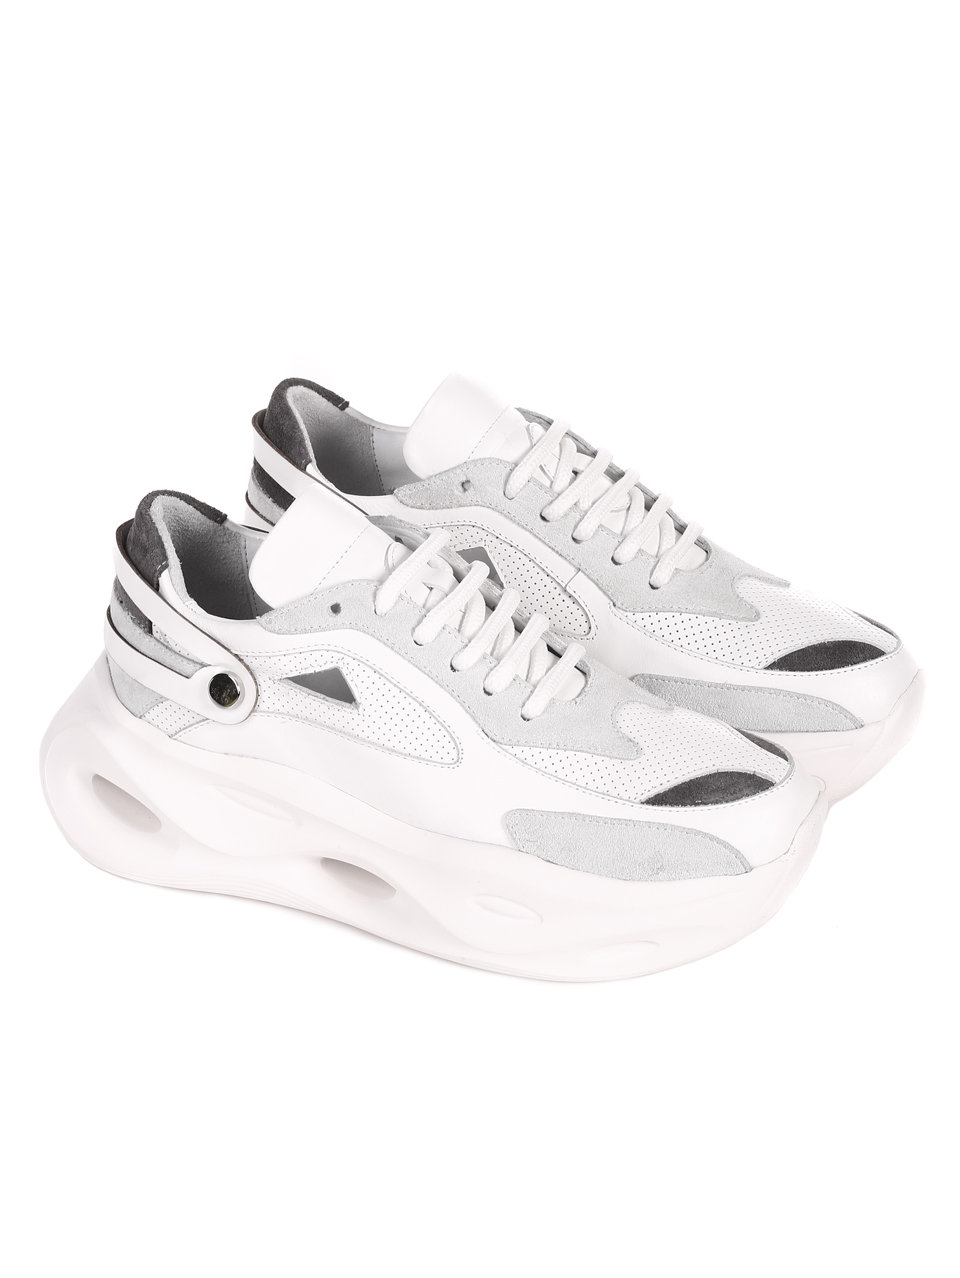 Ежедневни дамски комфортни обувки от естествена кожа в бяло 3AT-22317 white